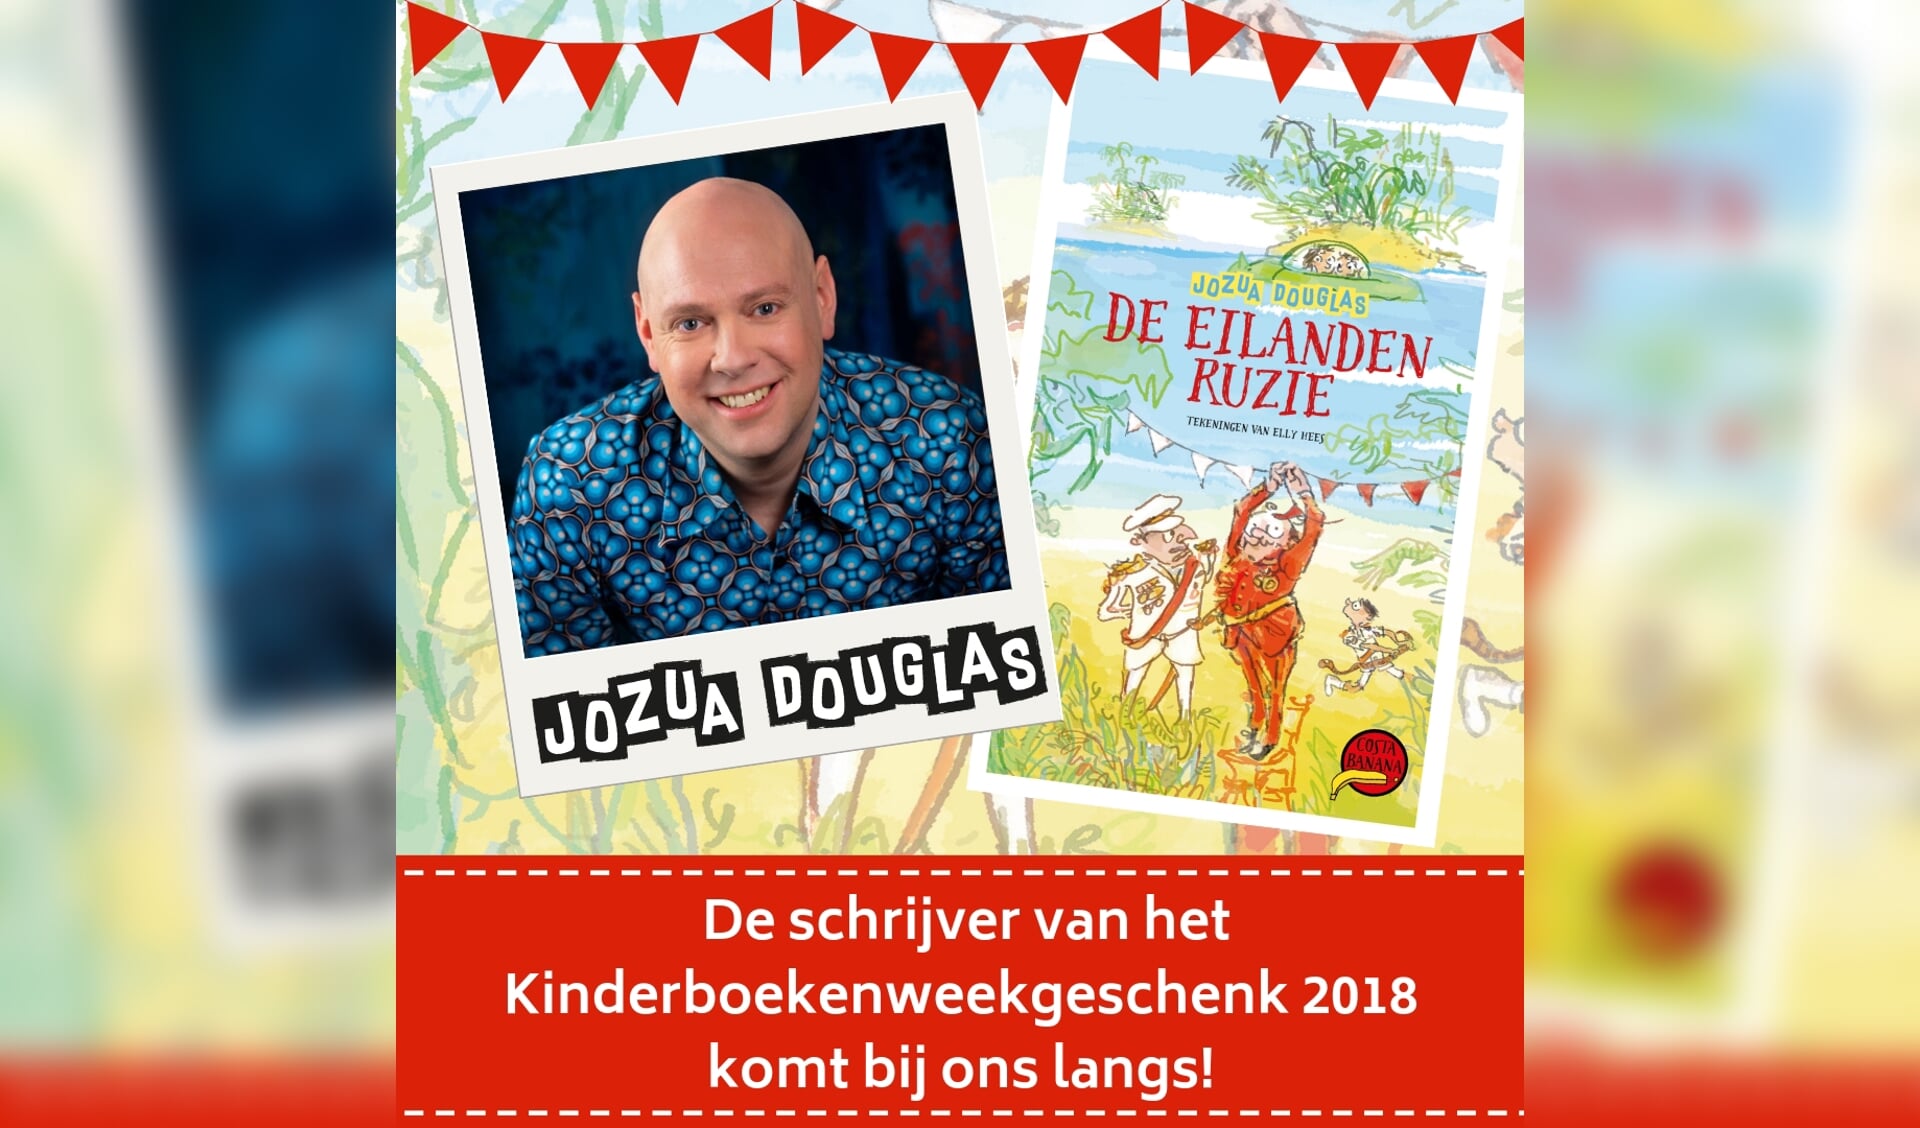 Jozua Douglas heeft het Kinderboekenweekgeschenk 2018 geschreven.